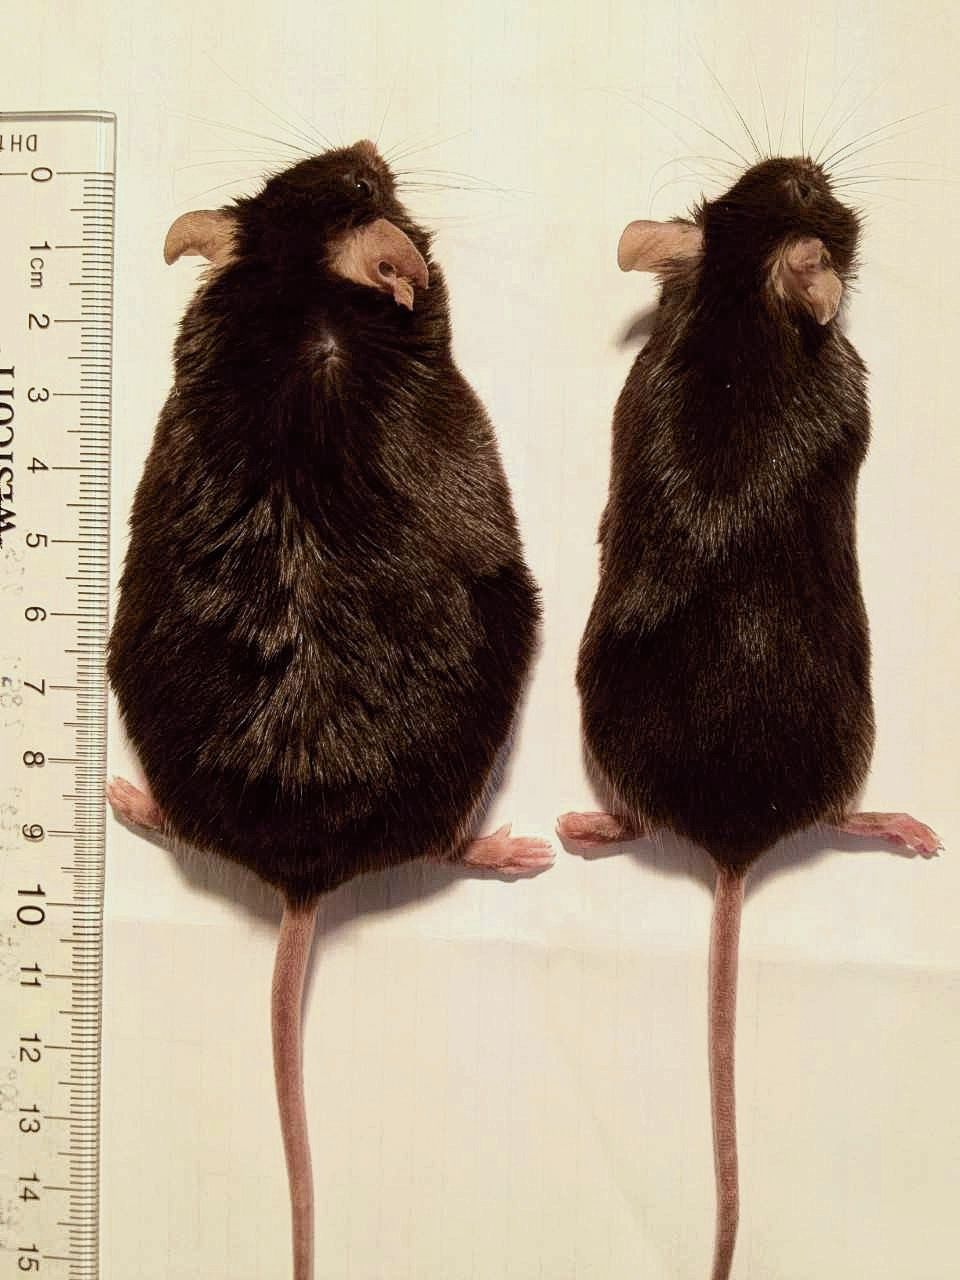 Een niet-ruikende muis (rechts) eet evenveel als een ruikende muis, maar weegt minder.